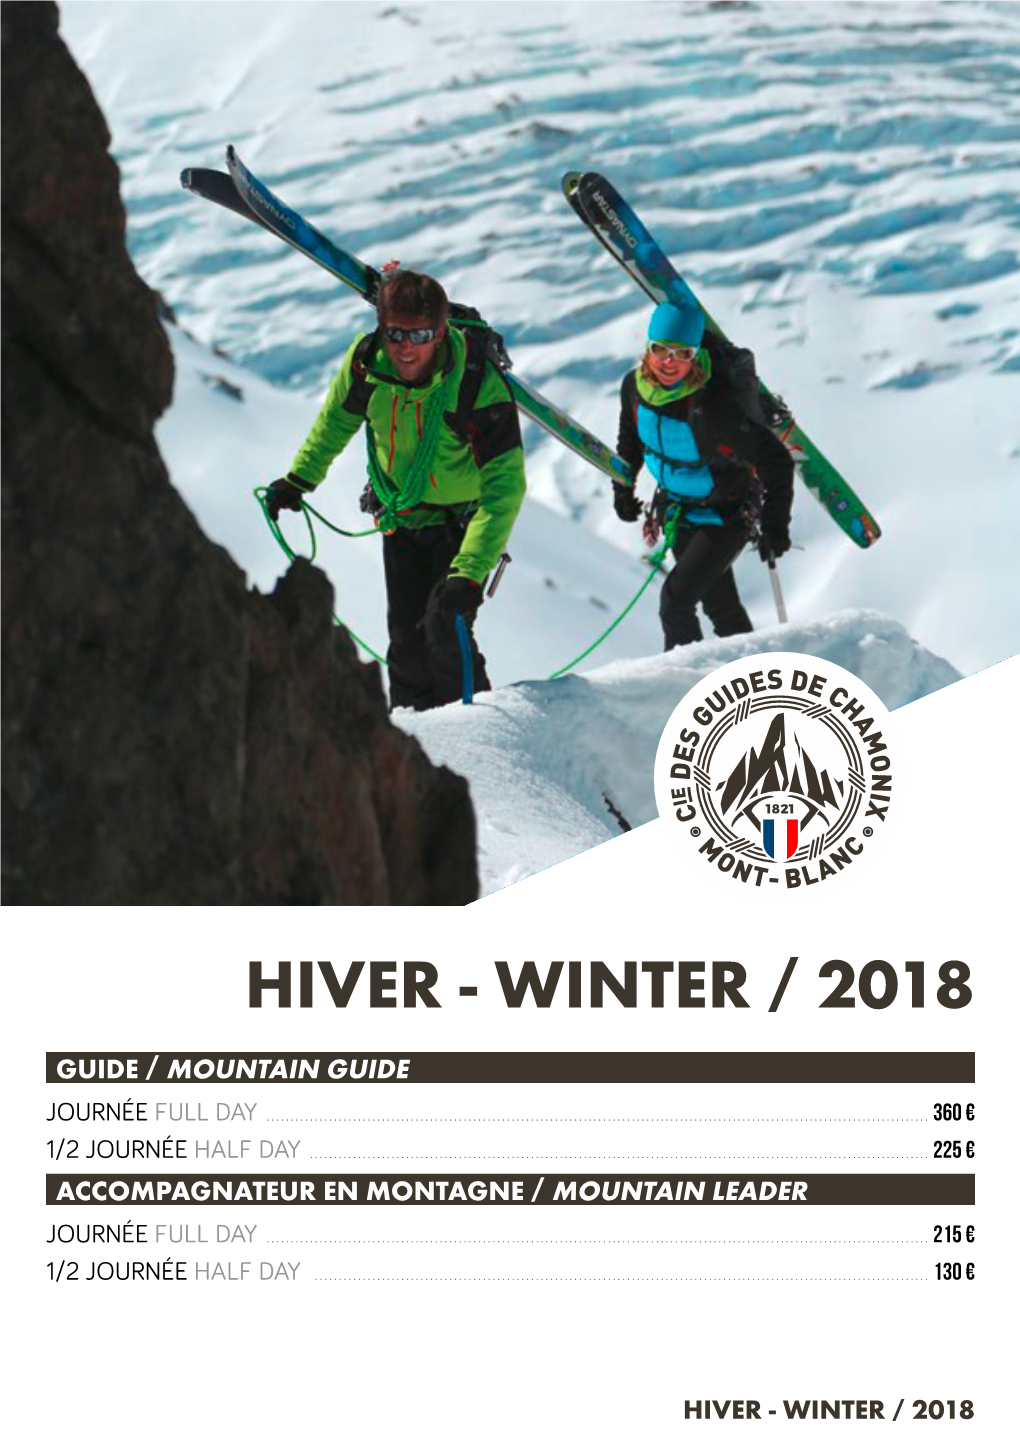 Hiver - Winter / 2018